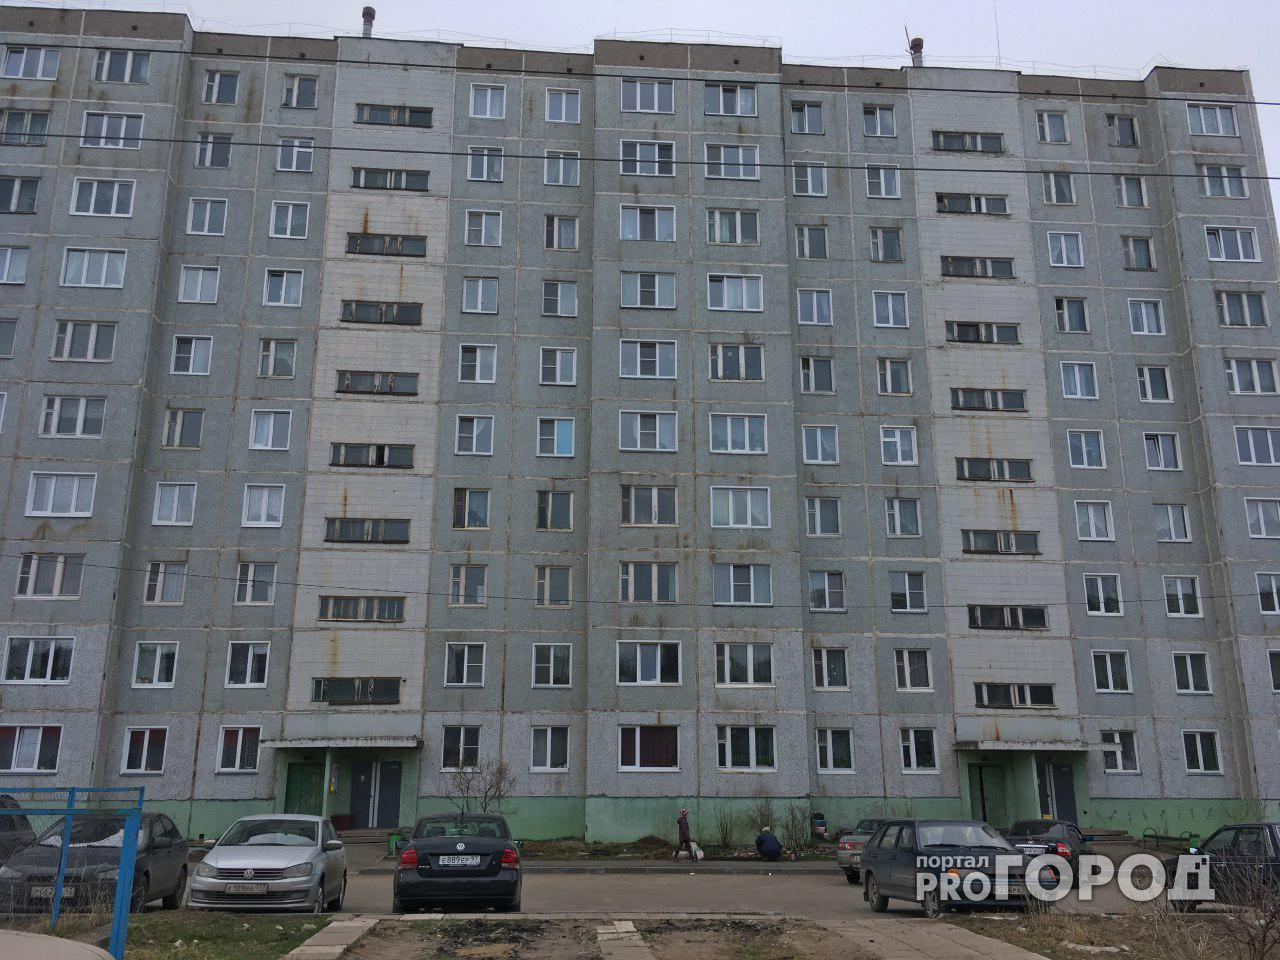 В Кирове дети выпали из окна 9 этажа: новые подробности ЧП